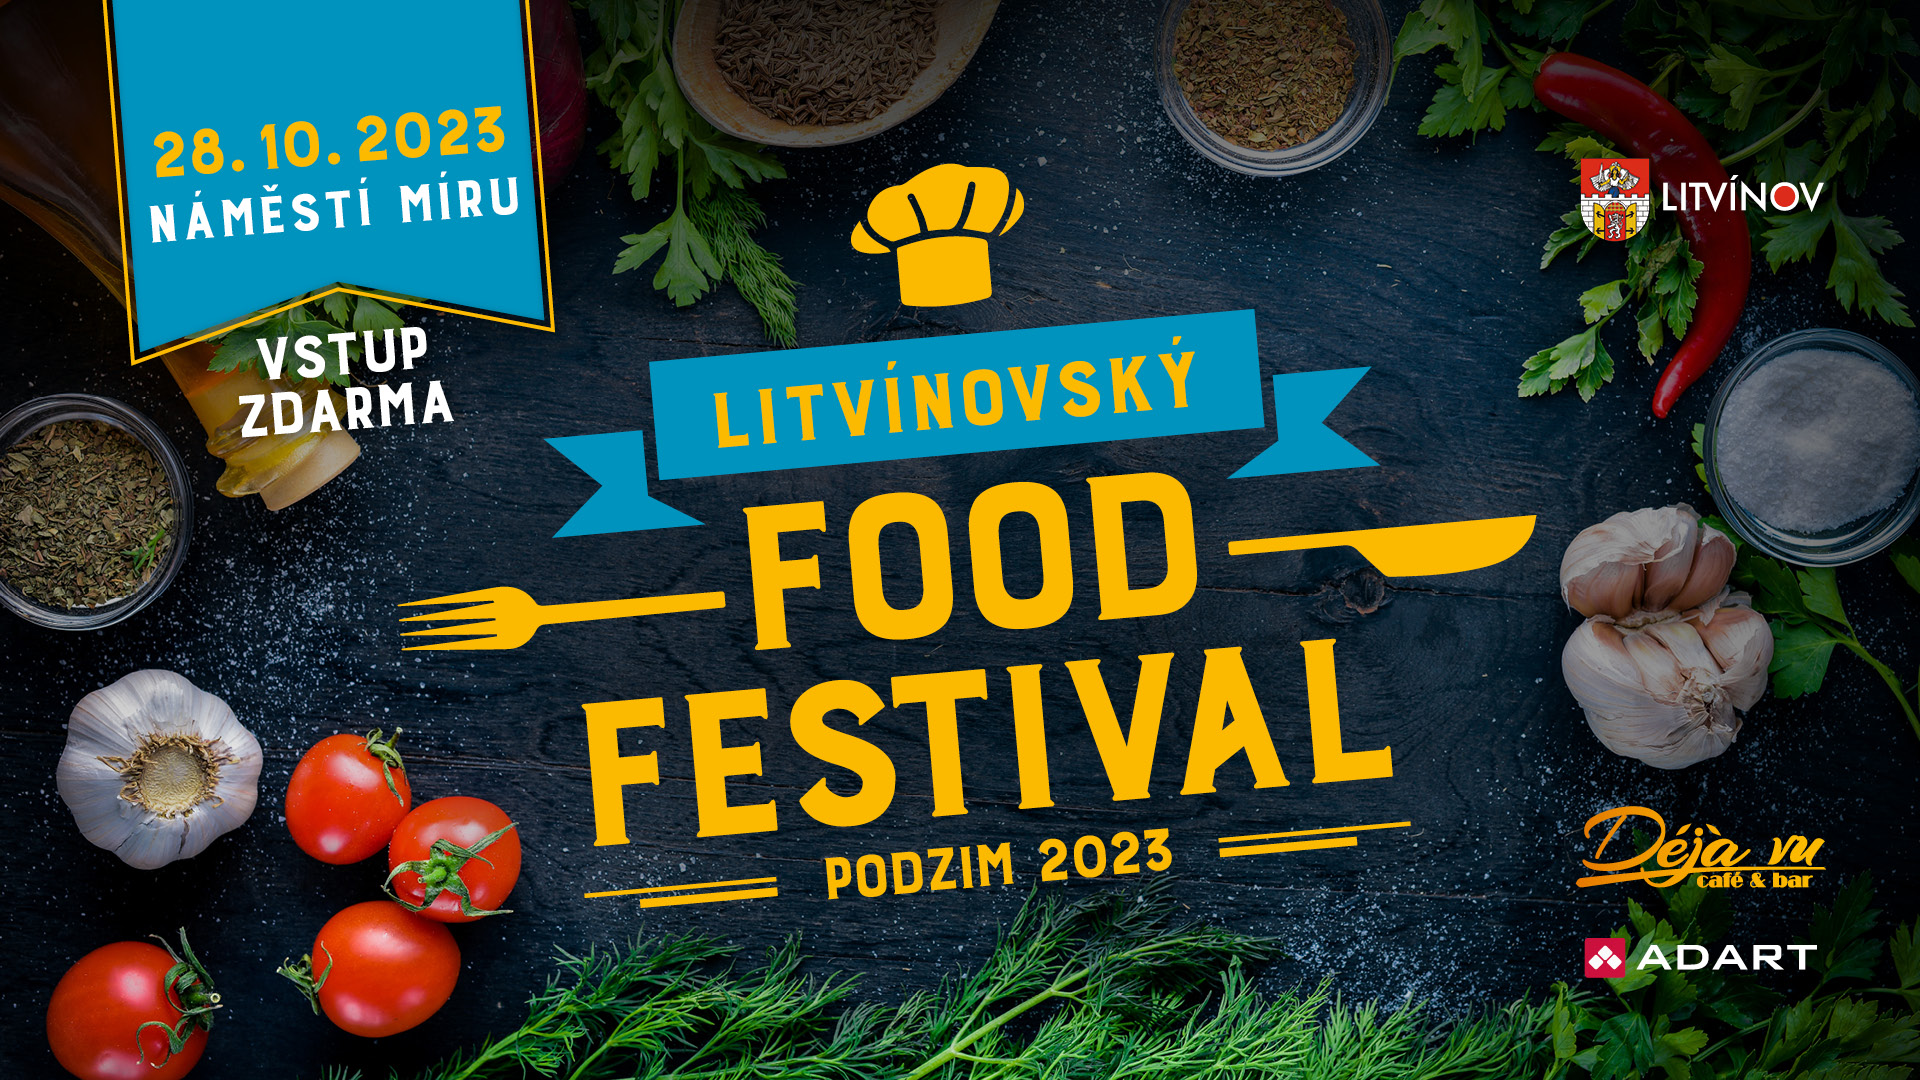 Litvínovský food festival | podzim 23